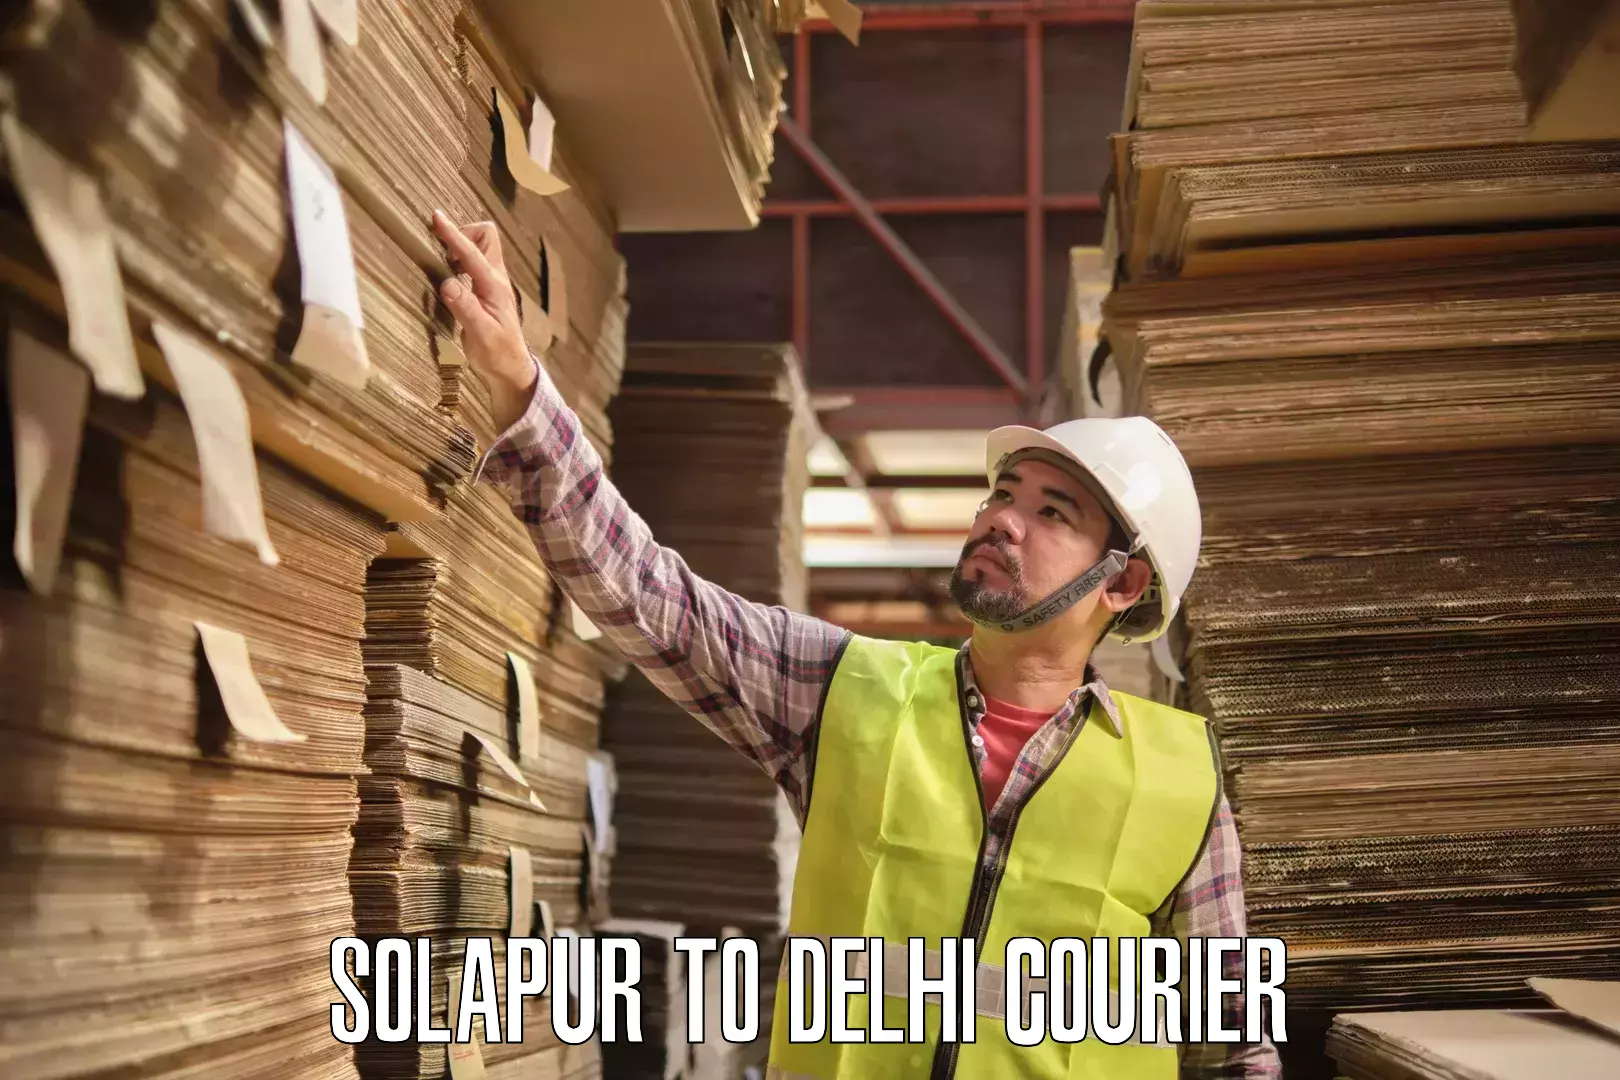 Courier service comparison in Solapur to Jamia Hamdard New Delhi